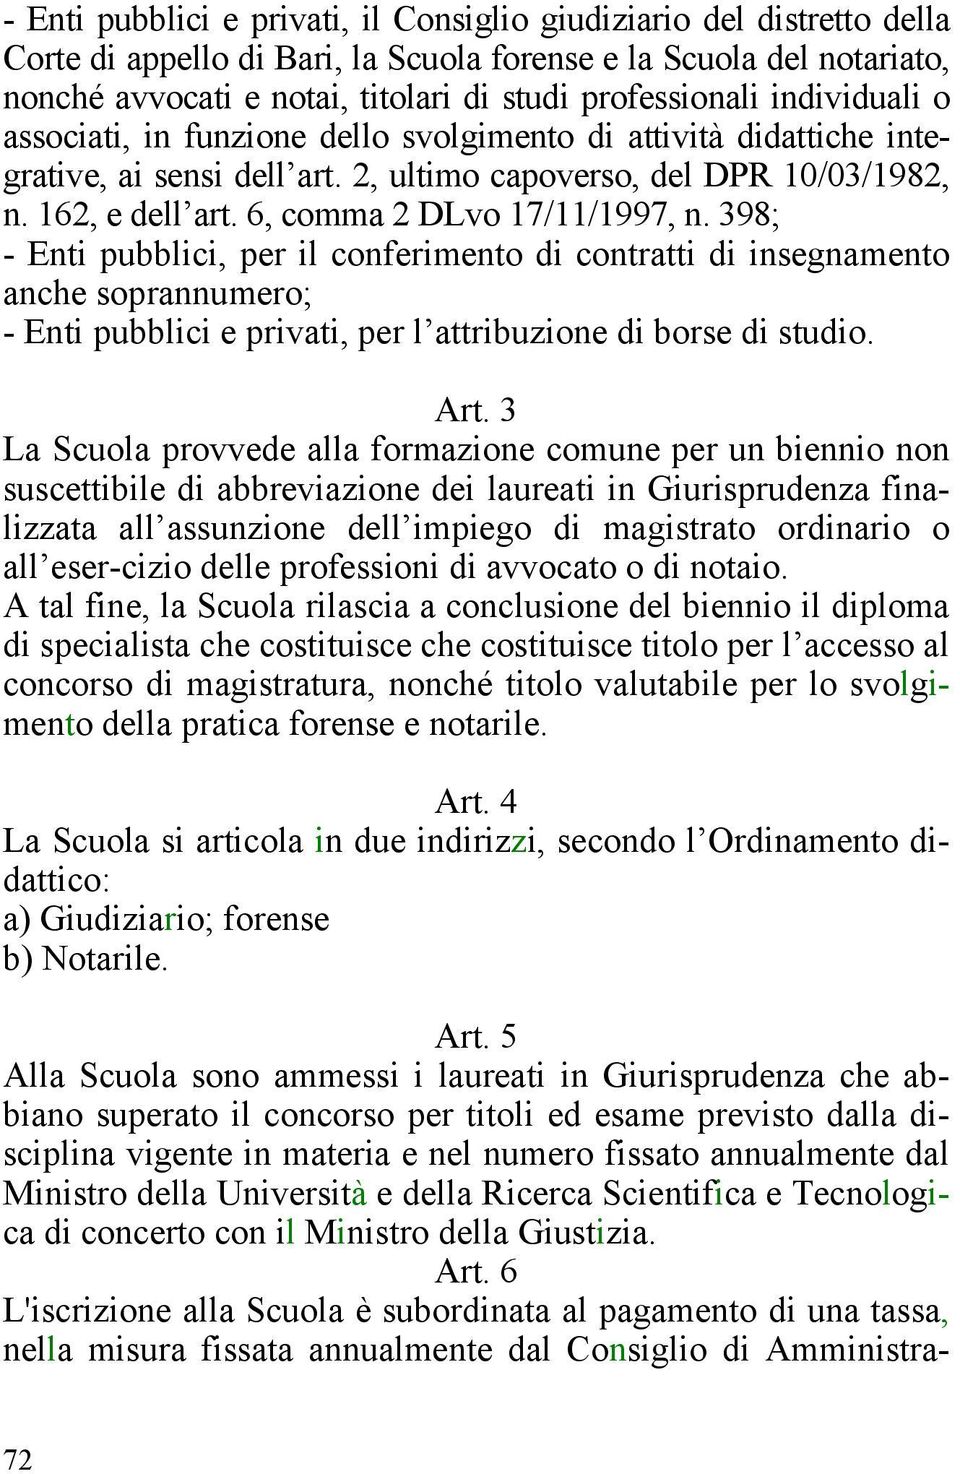 6, comma 2 DLvo 17/11/1997, n. 398; - Enti pubblici, per il conferimento di contratti di insegnamento anche soprannumero; - Enti pubblici e privati, per l attribuzione di borse di studio. Art.